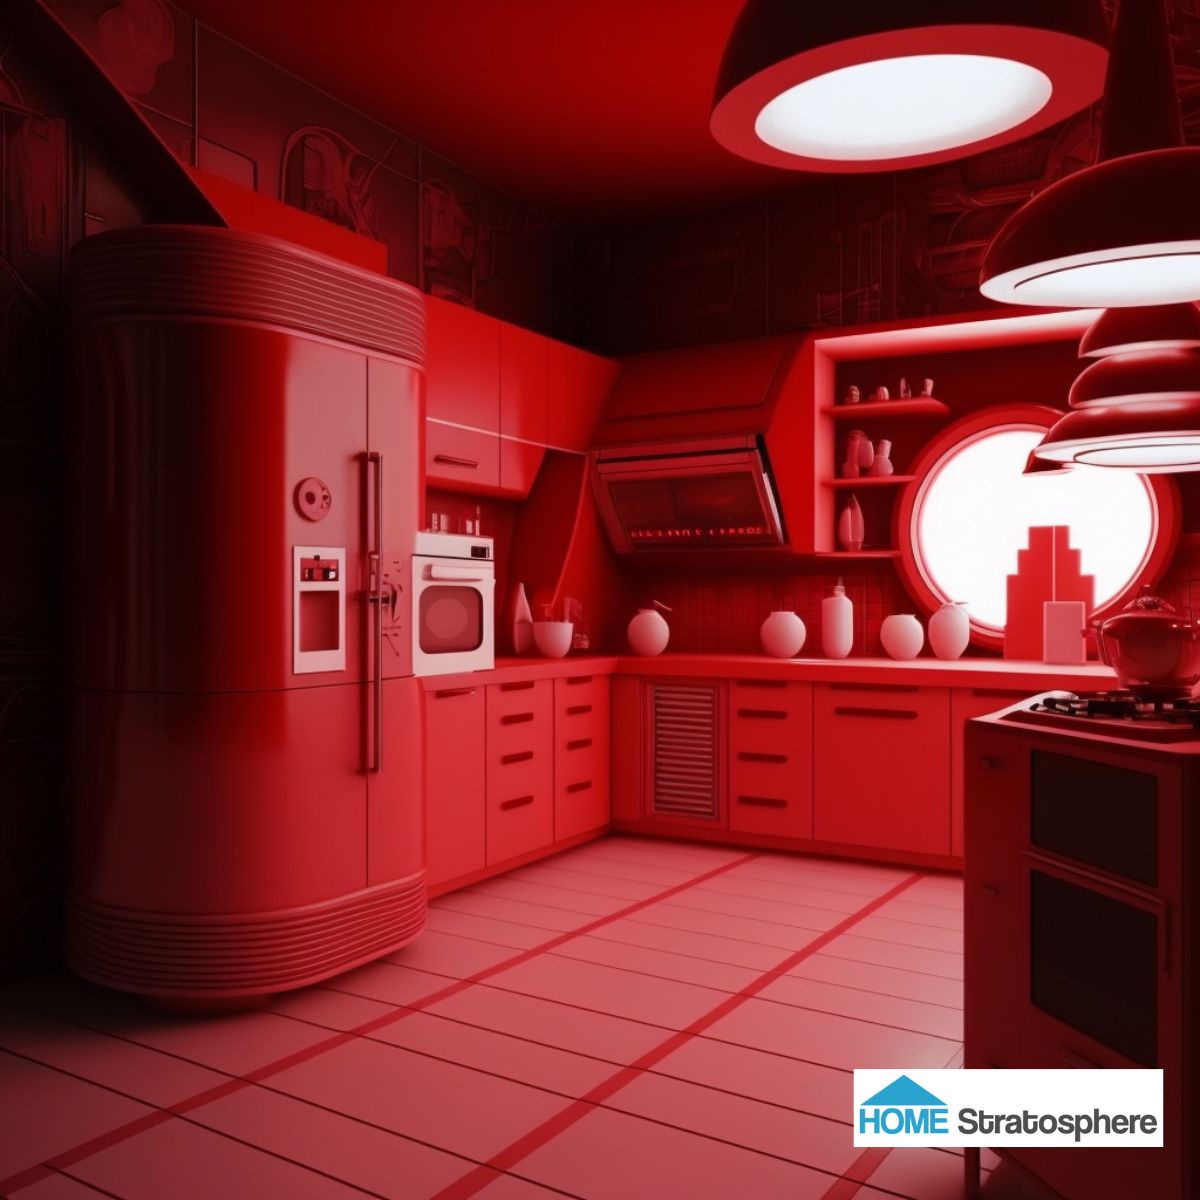 红色厨房激发的紧迫感可能会在截止日期前做饭时有所帮助。很难找到水槽和炉子，而且要么烤箱很小，要么厨房里有一台台式洗碗机。它也不是最具未来感的设计，尽管冰箱再次听从了原子技术的氛围。